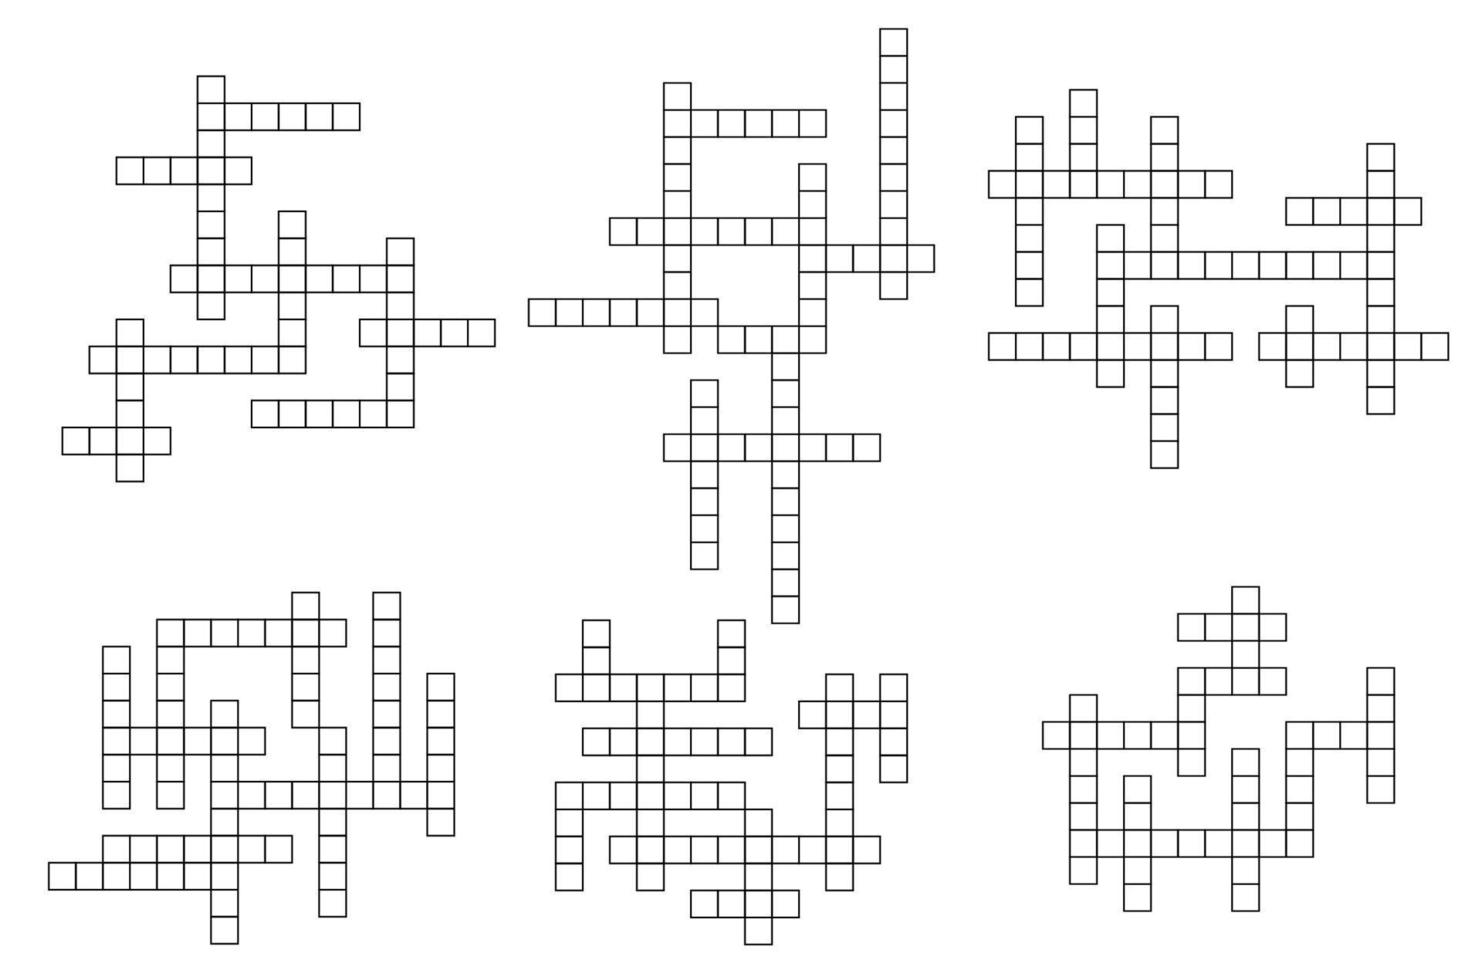 grille de jeu de mots croisés, puzzle de mots croisés vectoriels vecteur